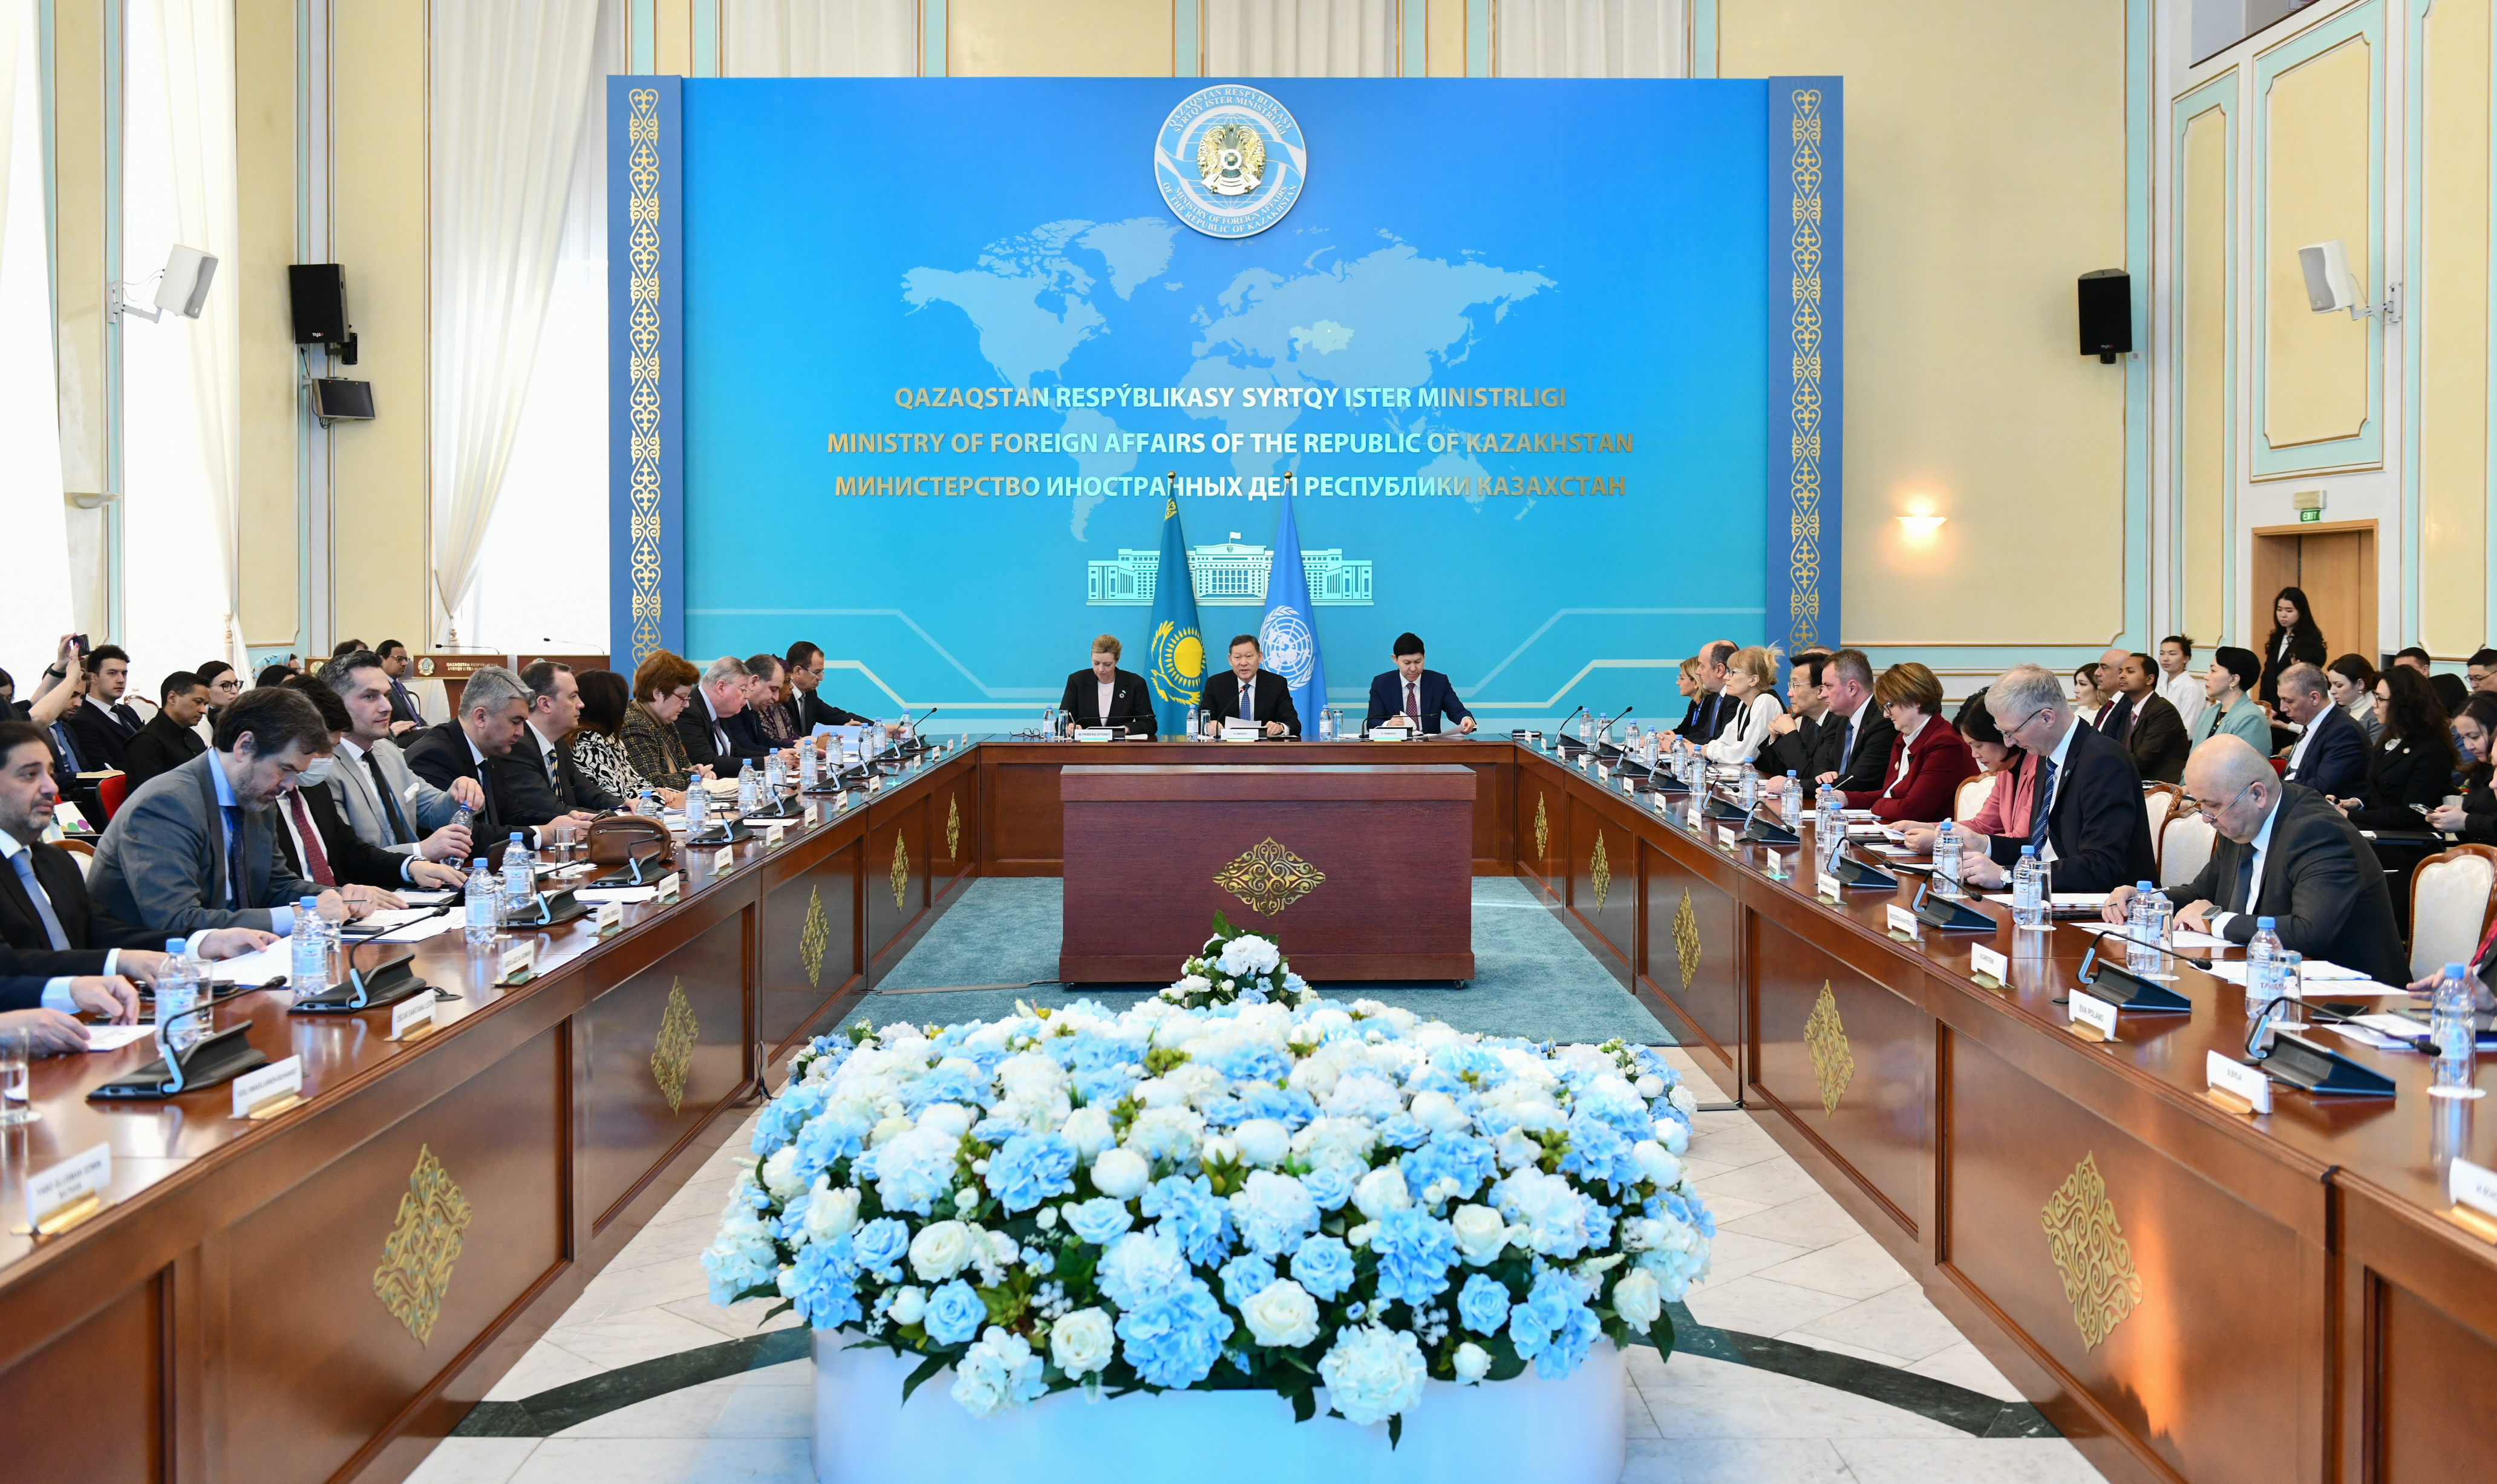 UN Presented Main Priorities of Activity in Kazakhstan